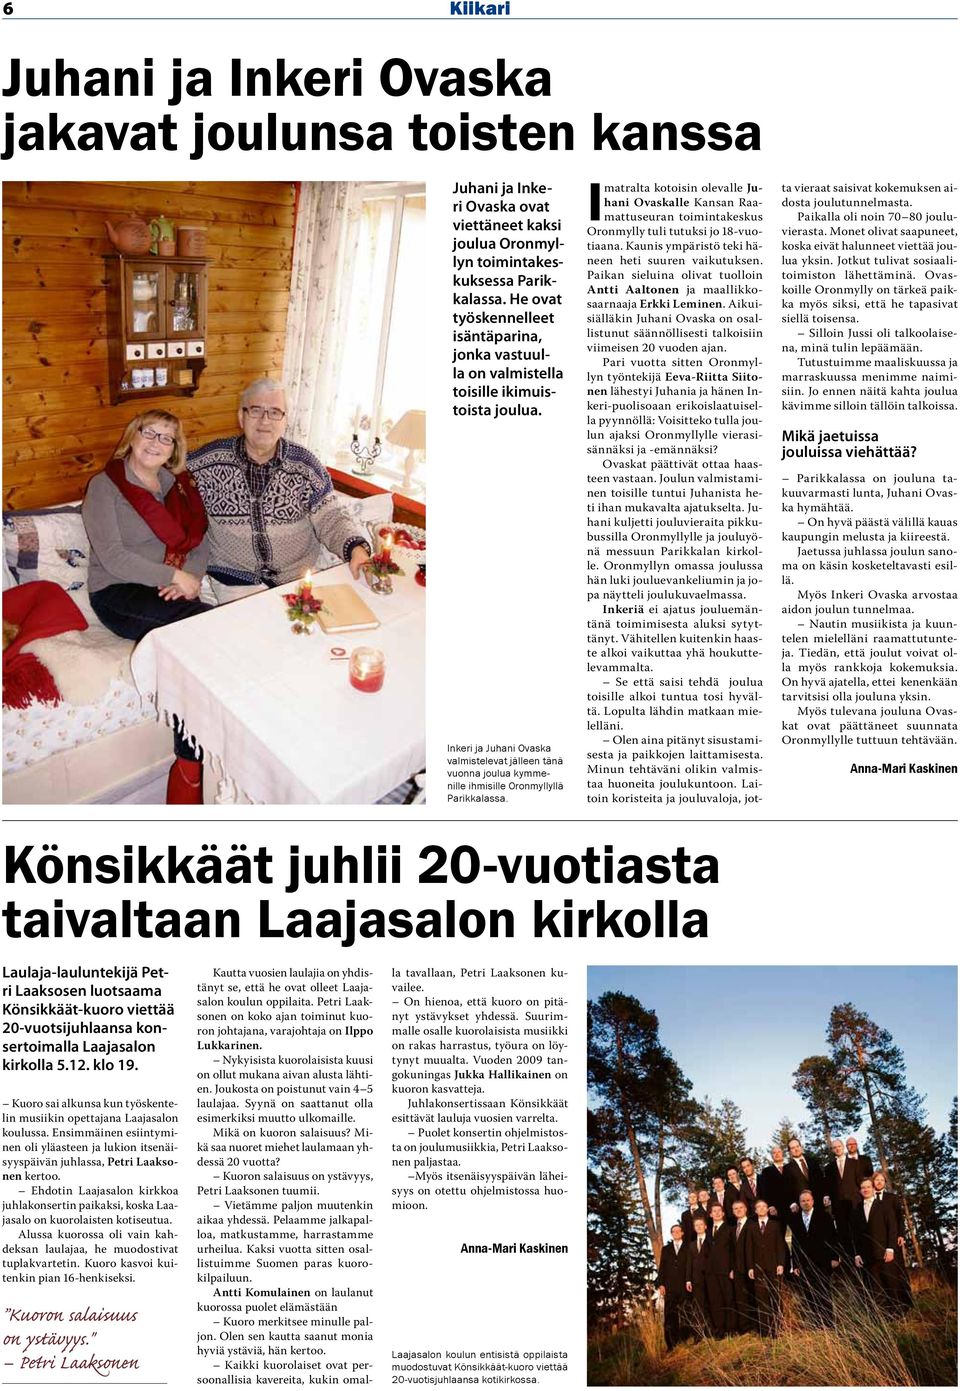 Inkeri ja Juhani Ovaska valmistelevat jälleen tänä vuonna joulua kymmenille ihmisille Oronmyllyllä Parikkalassa.